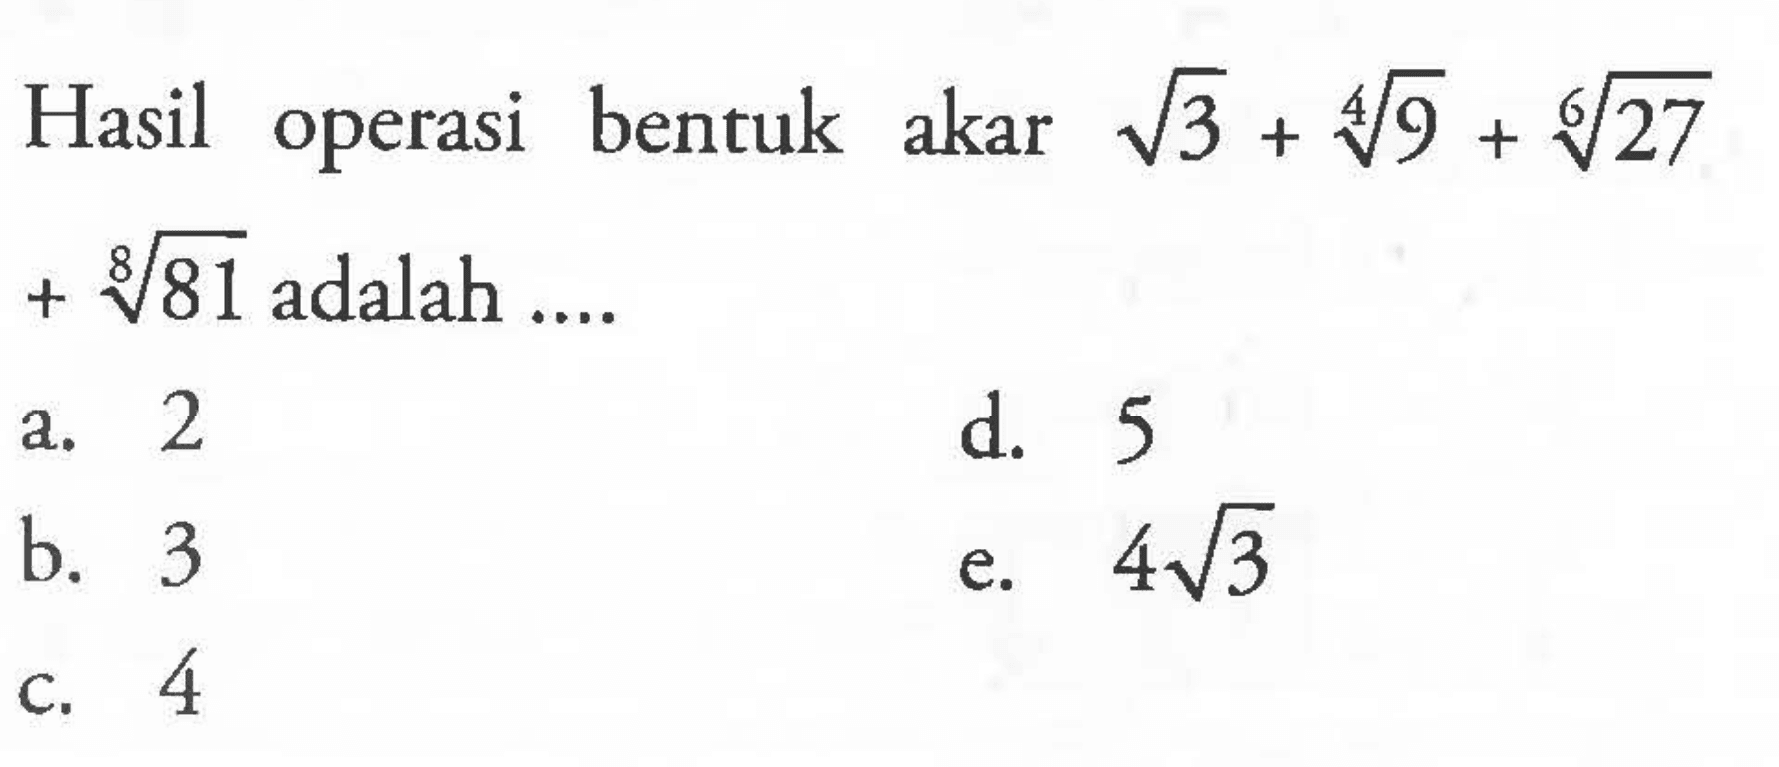 Hasil operasi bentuk akar akar(3) + 9^/4 + 27^1/6 + 81^1/8 adalah ....